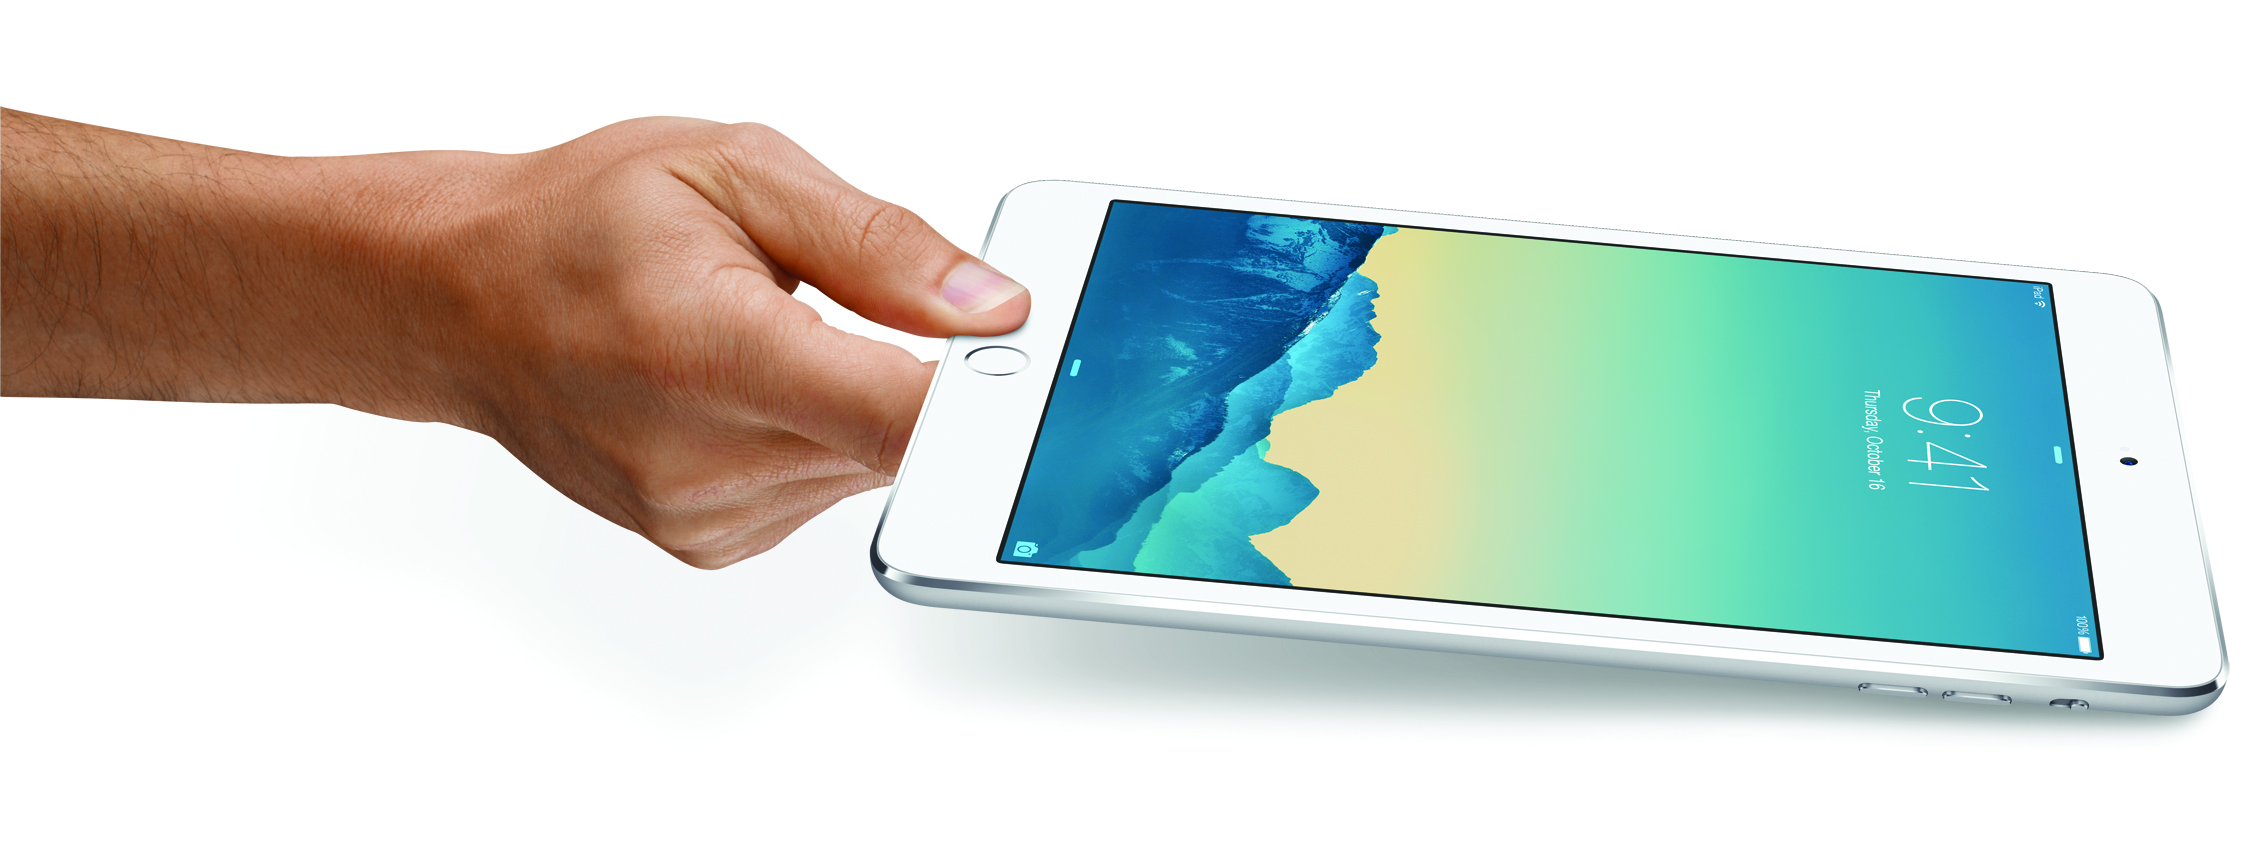 Apple Ipad Mini 3 Wi Fi In All Colors 16gb 2 Reg 399 Or 64gb 399 Reg 499